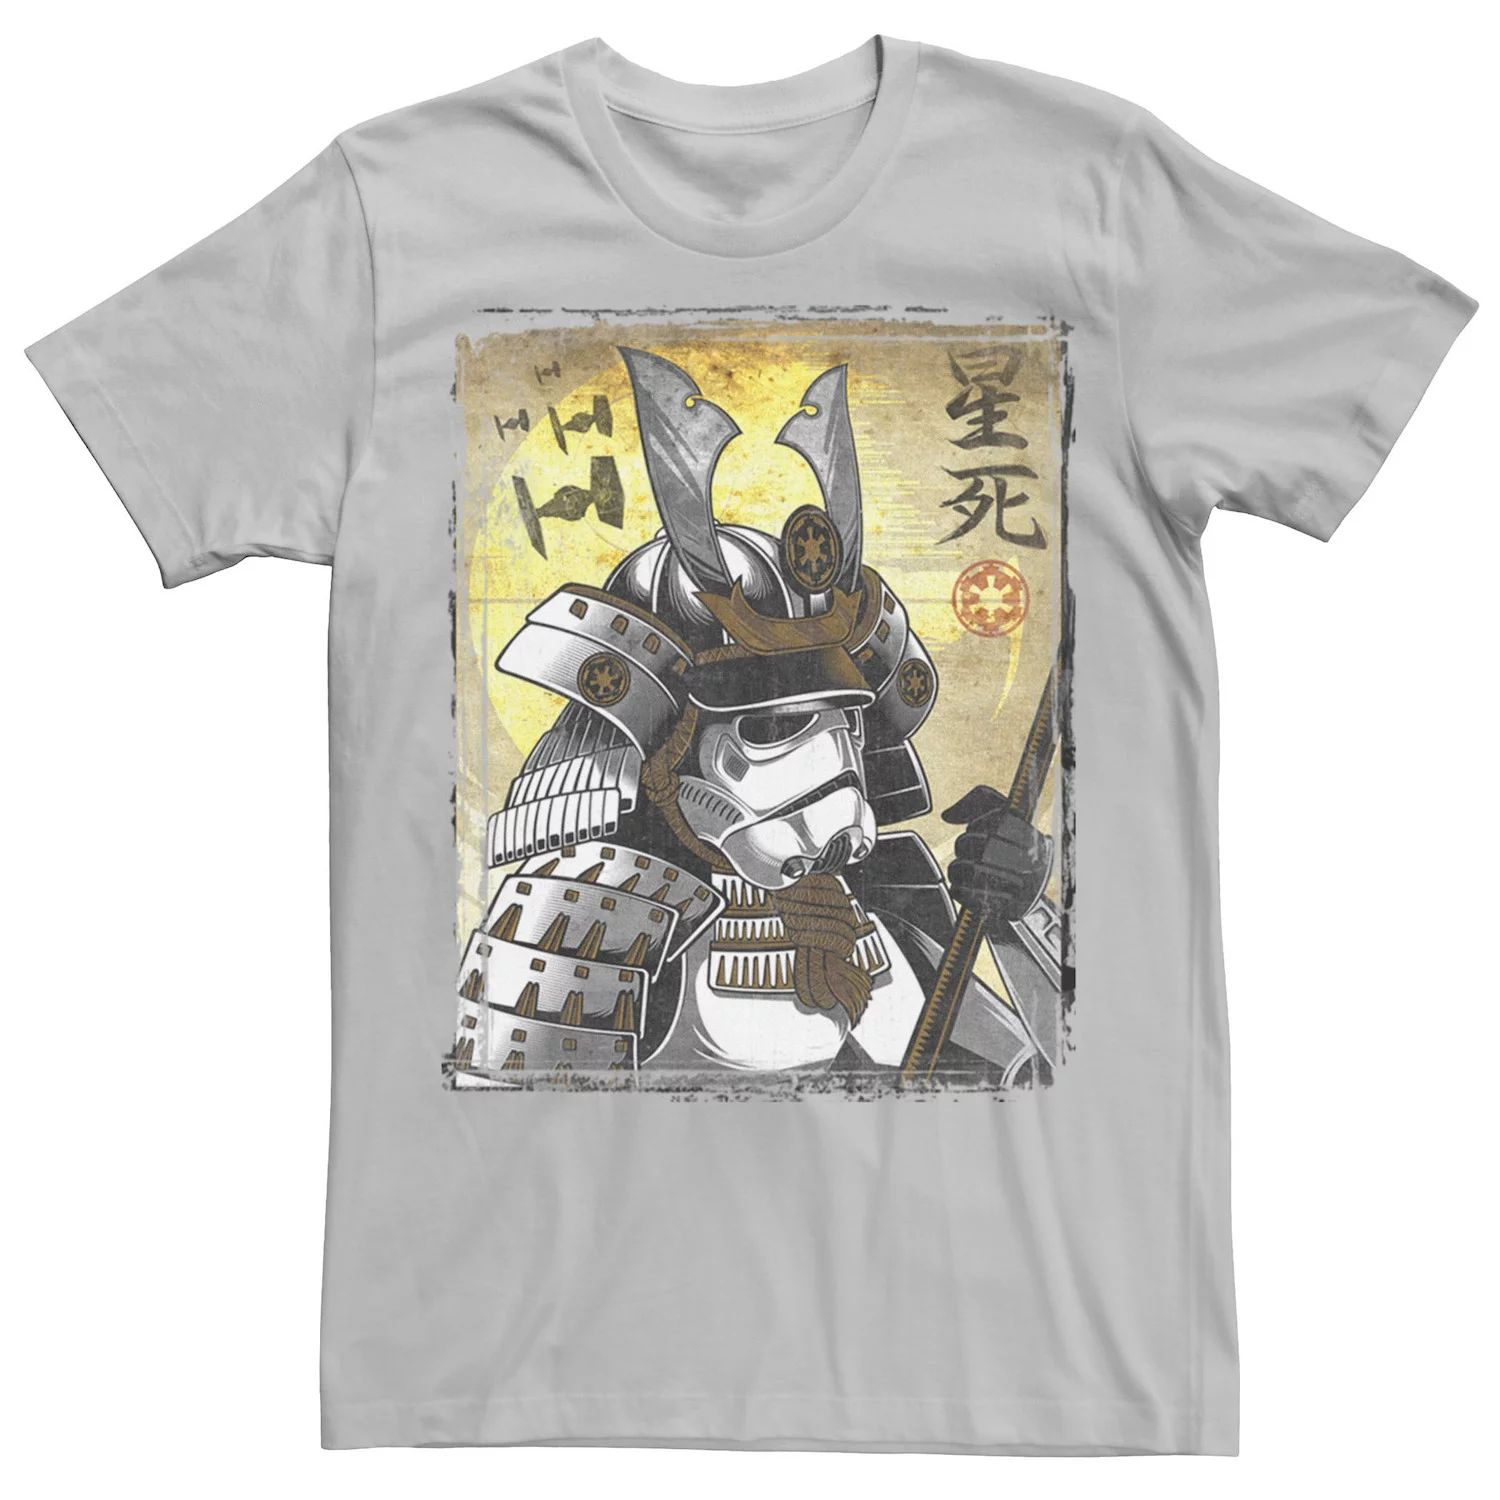 Мужская футболка с плакатом «Самурай-солдат Звездных войн» Star Wars, серебристый